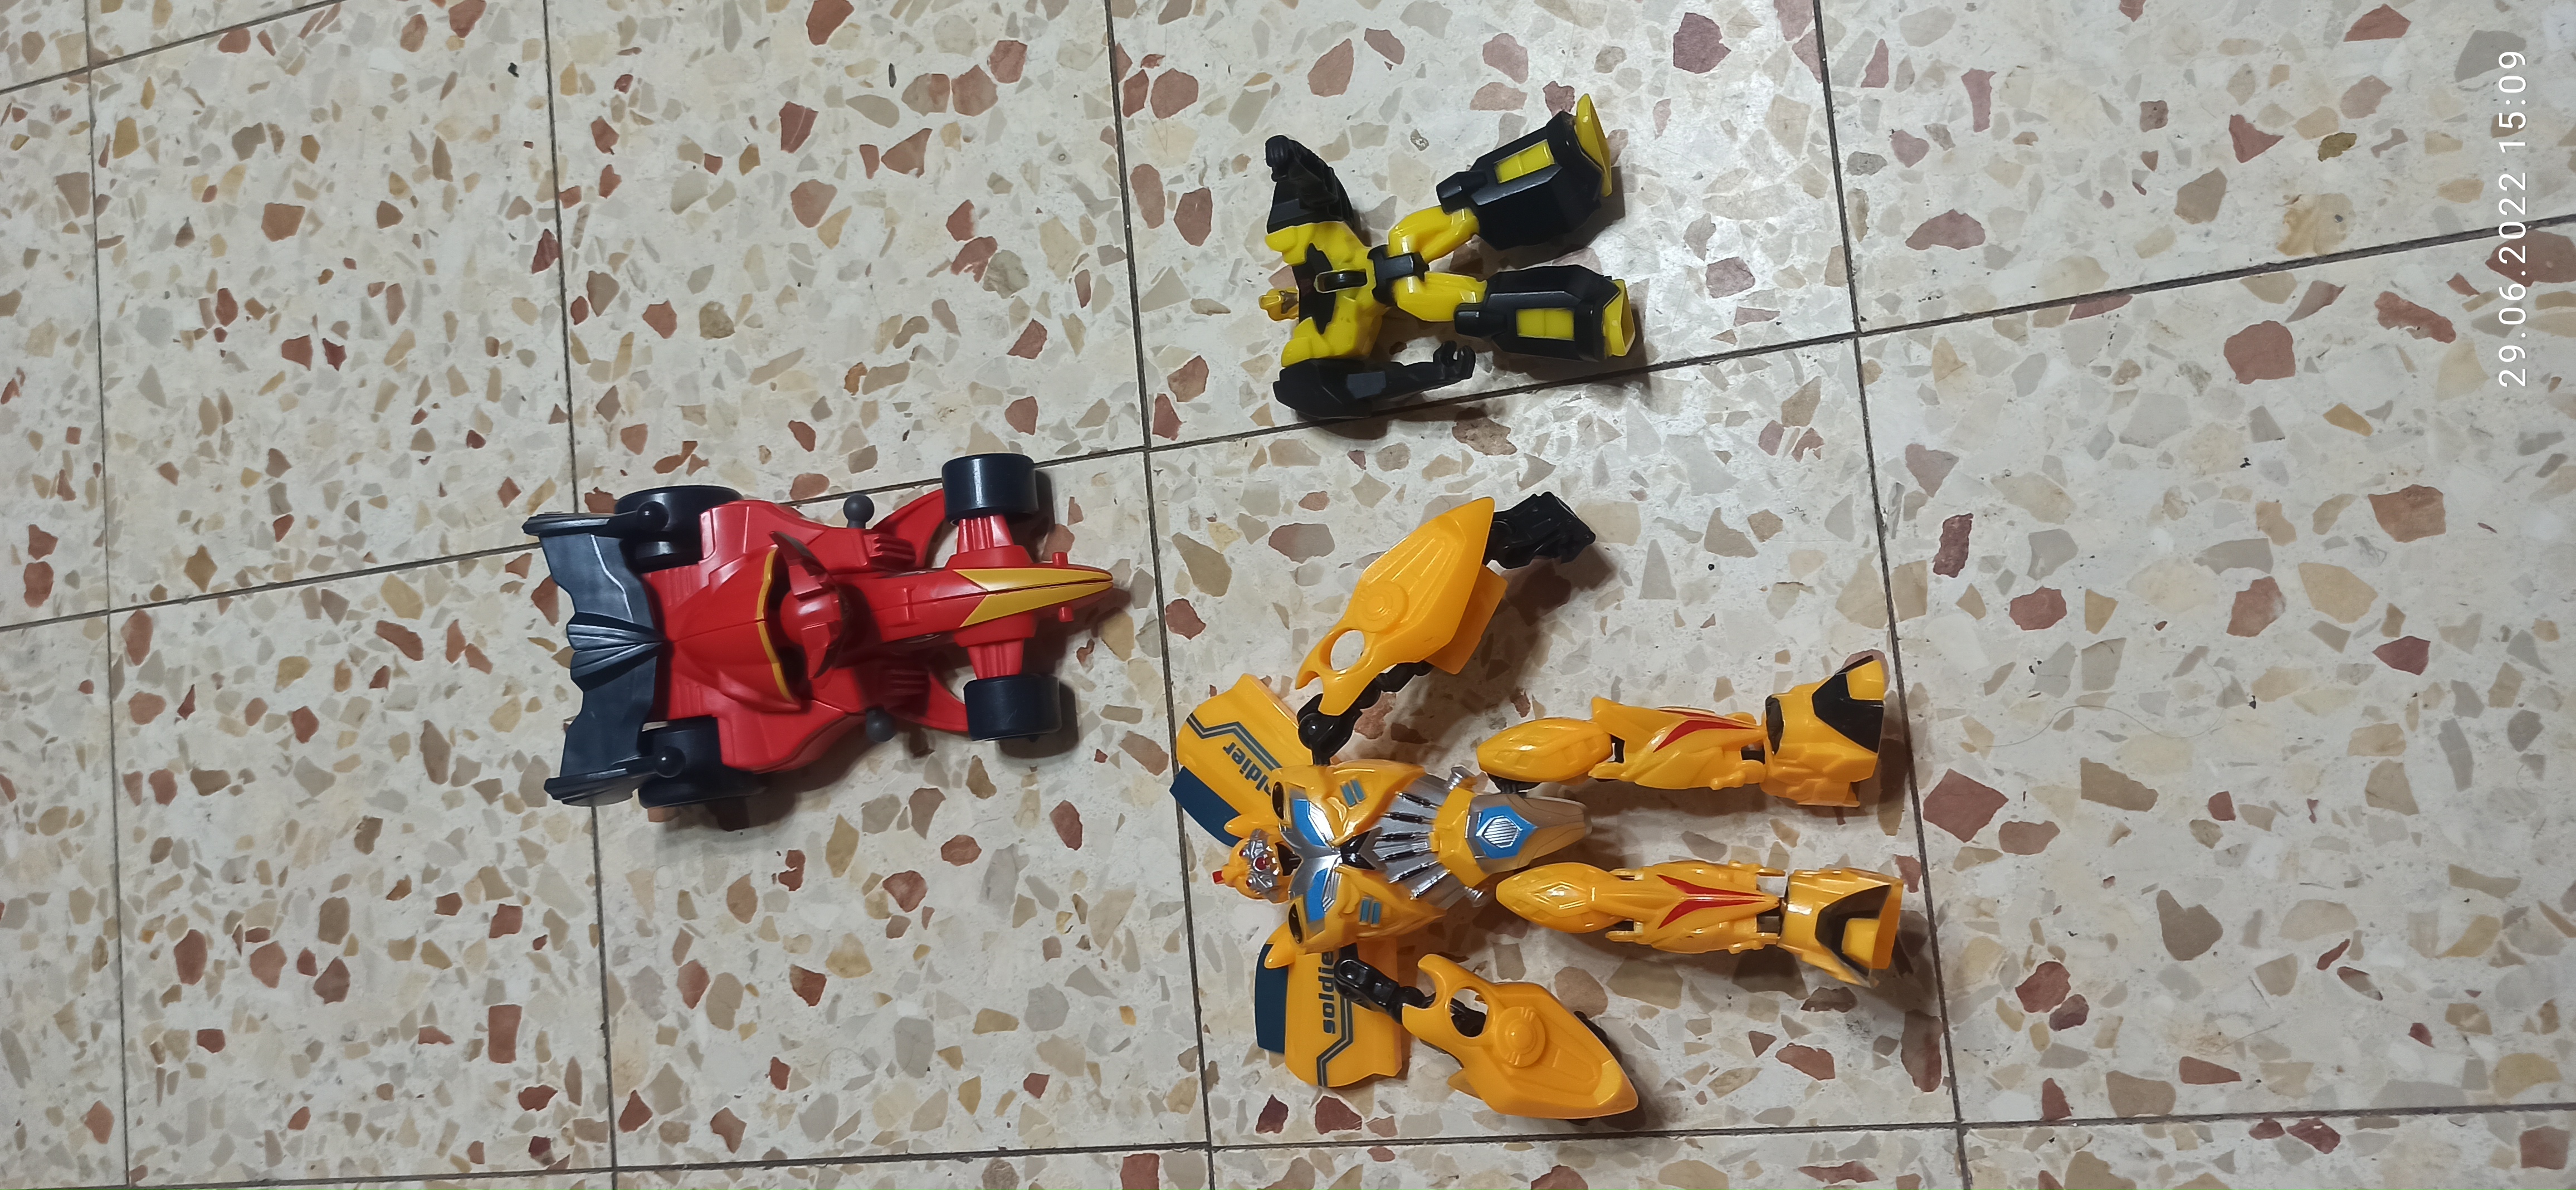 תמונה 1 ,2 רובוטריקים ומכונית של סופרהי למכירה ביבנה לתינוק ולילד  משחקים וצעצועים